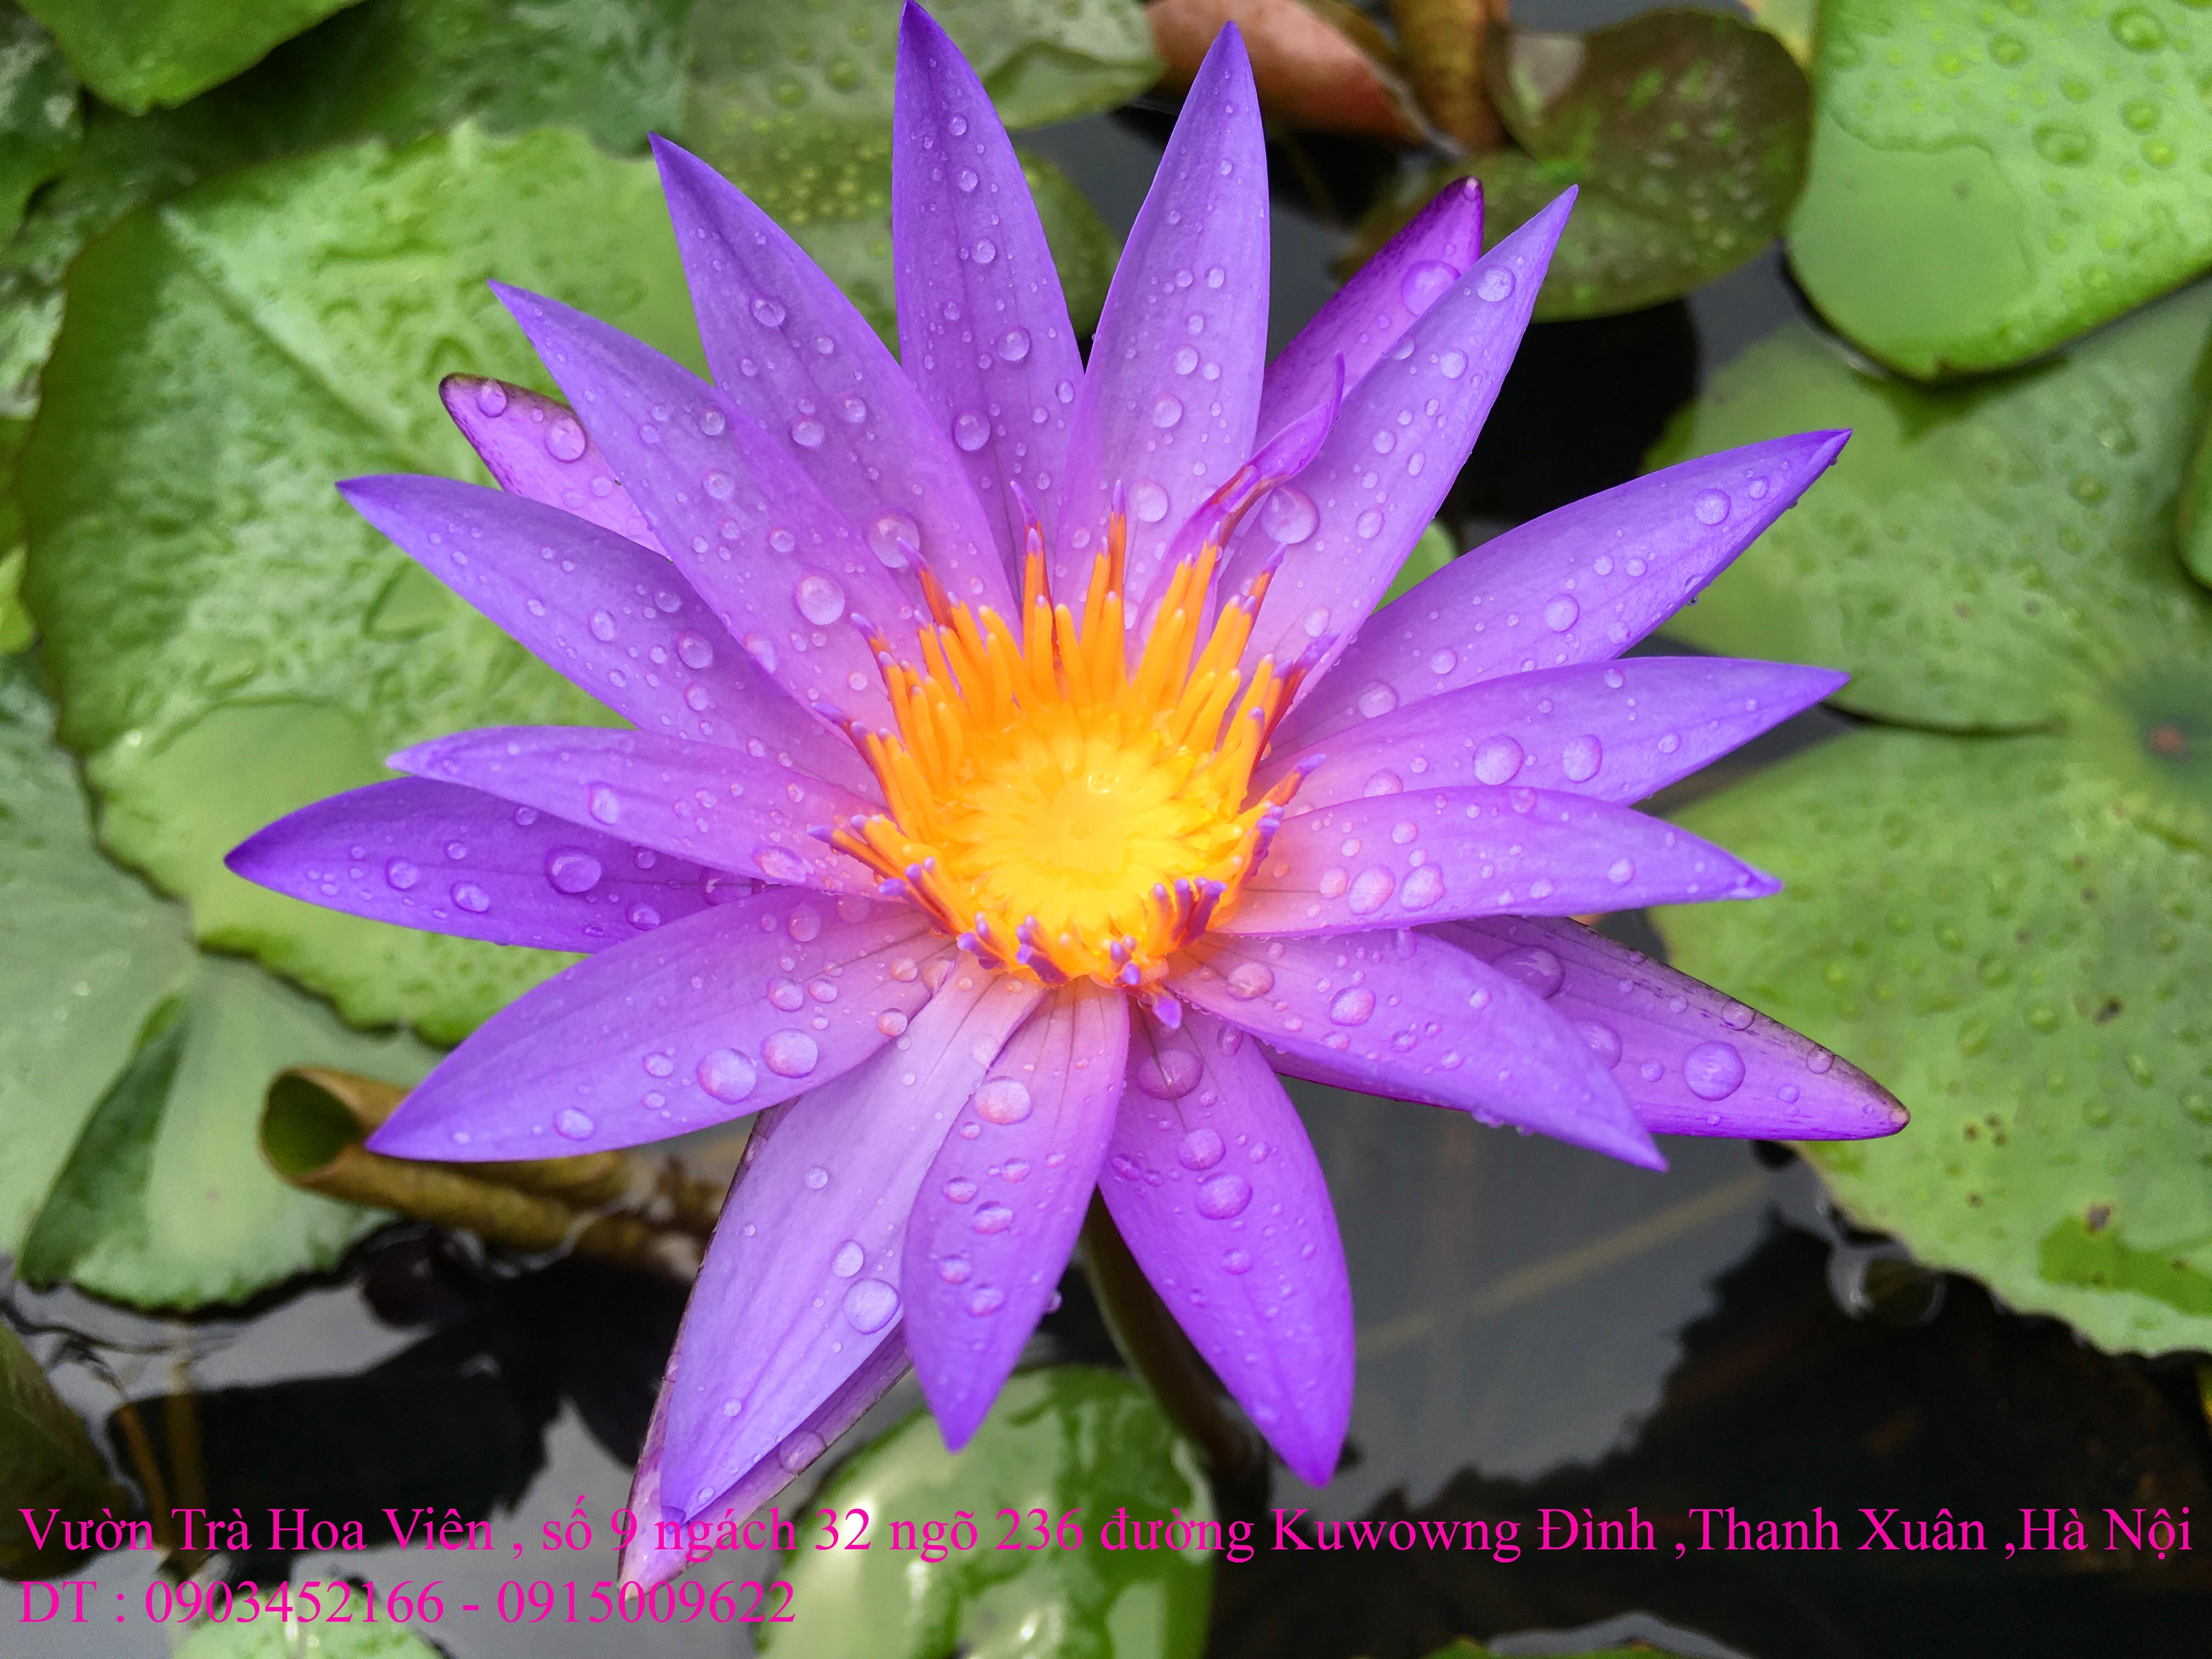 3 Bán hoa Súng Thái Lan , Mỹ , Úc với 120 màu sắc đẹp nở hoa bốn mùa Xuân , Hạ , Thu , Đông